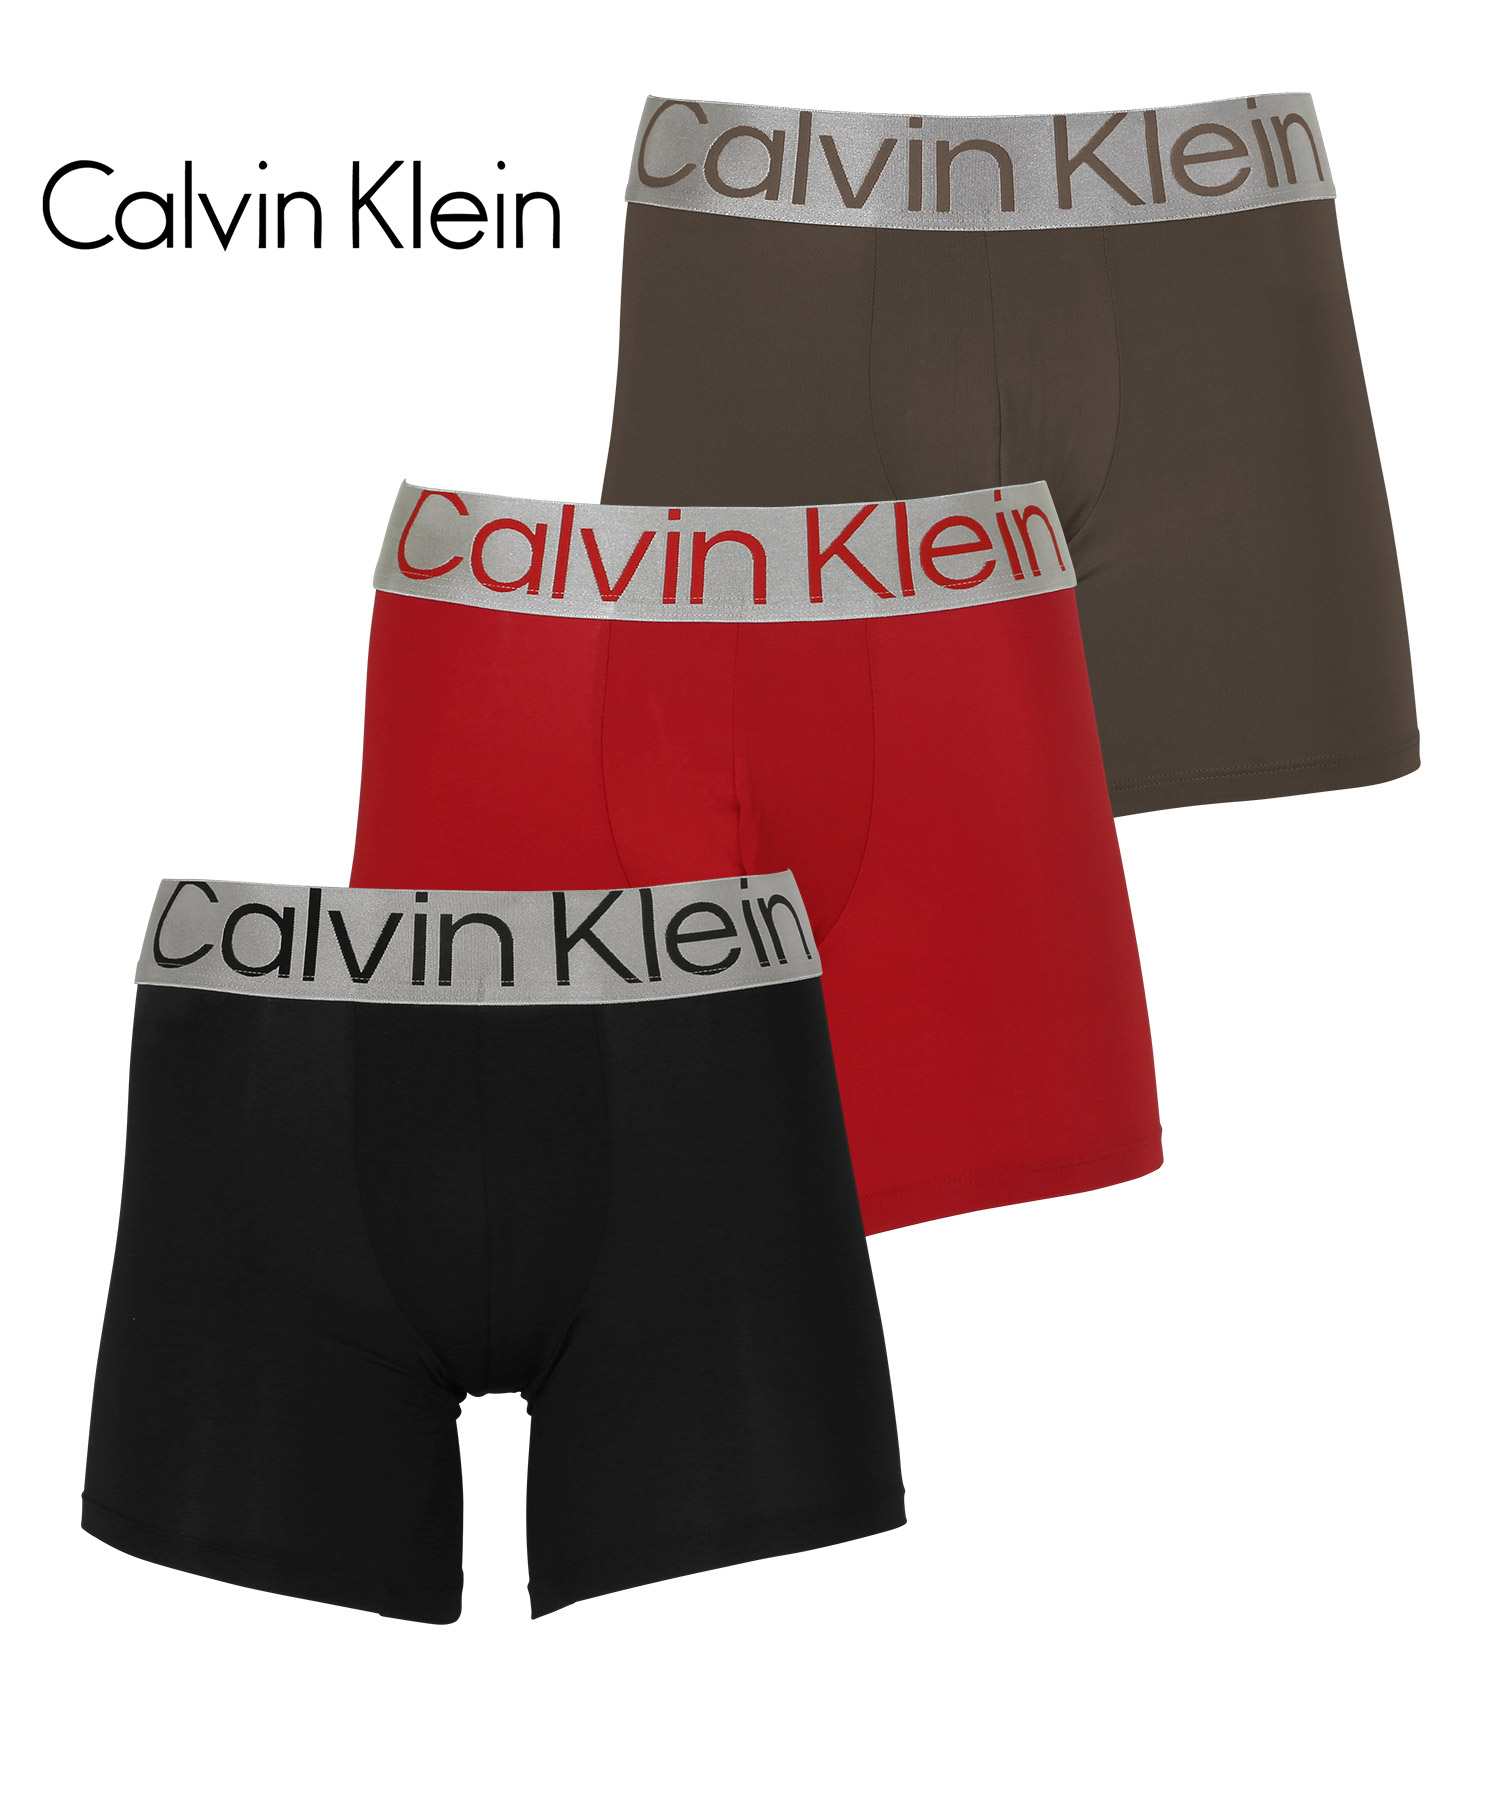 カルバンクライン ボクサーパンツ 3枚セット メンズ ロング Calvin Klein アンダーウェ...